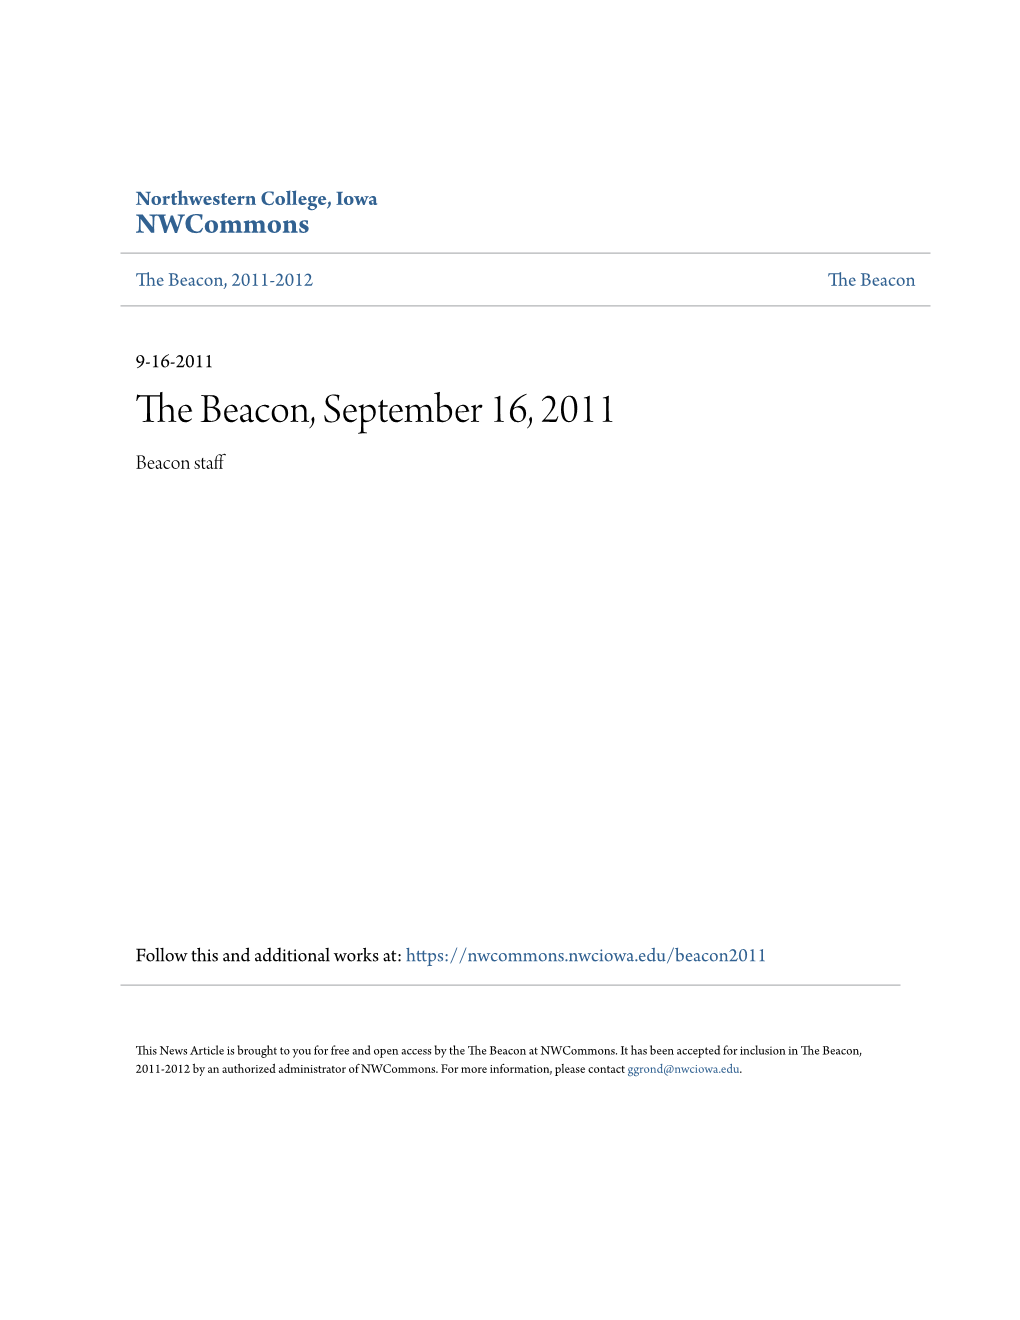 The Beacon, September 16, 2011 Beacon Staff